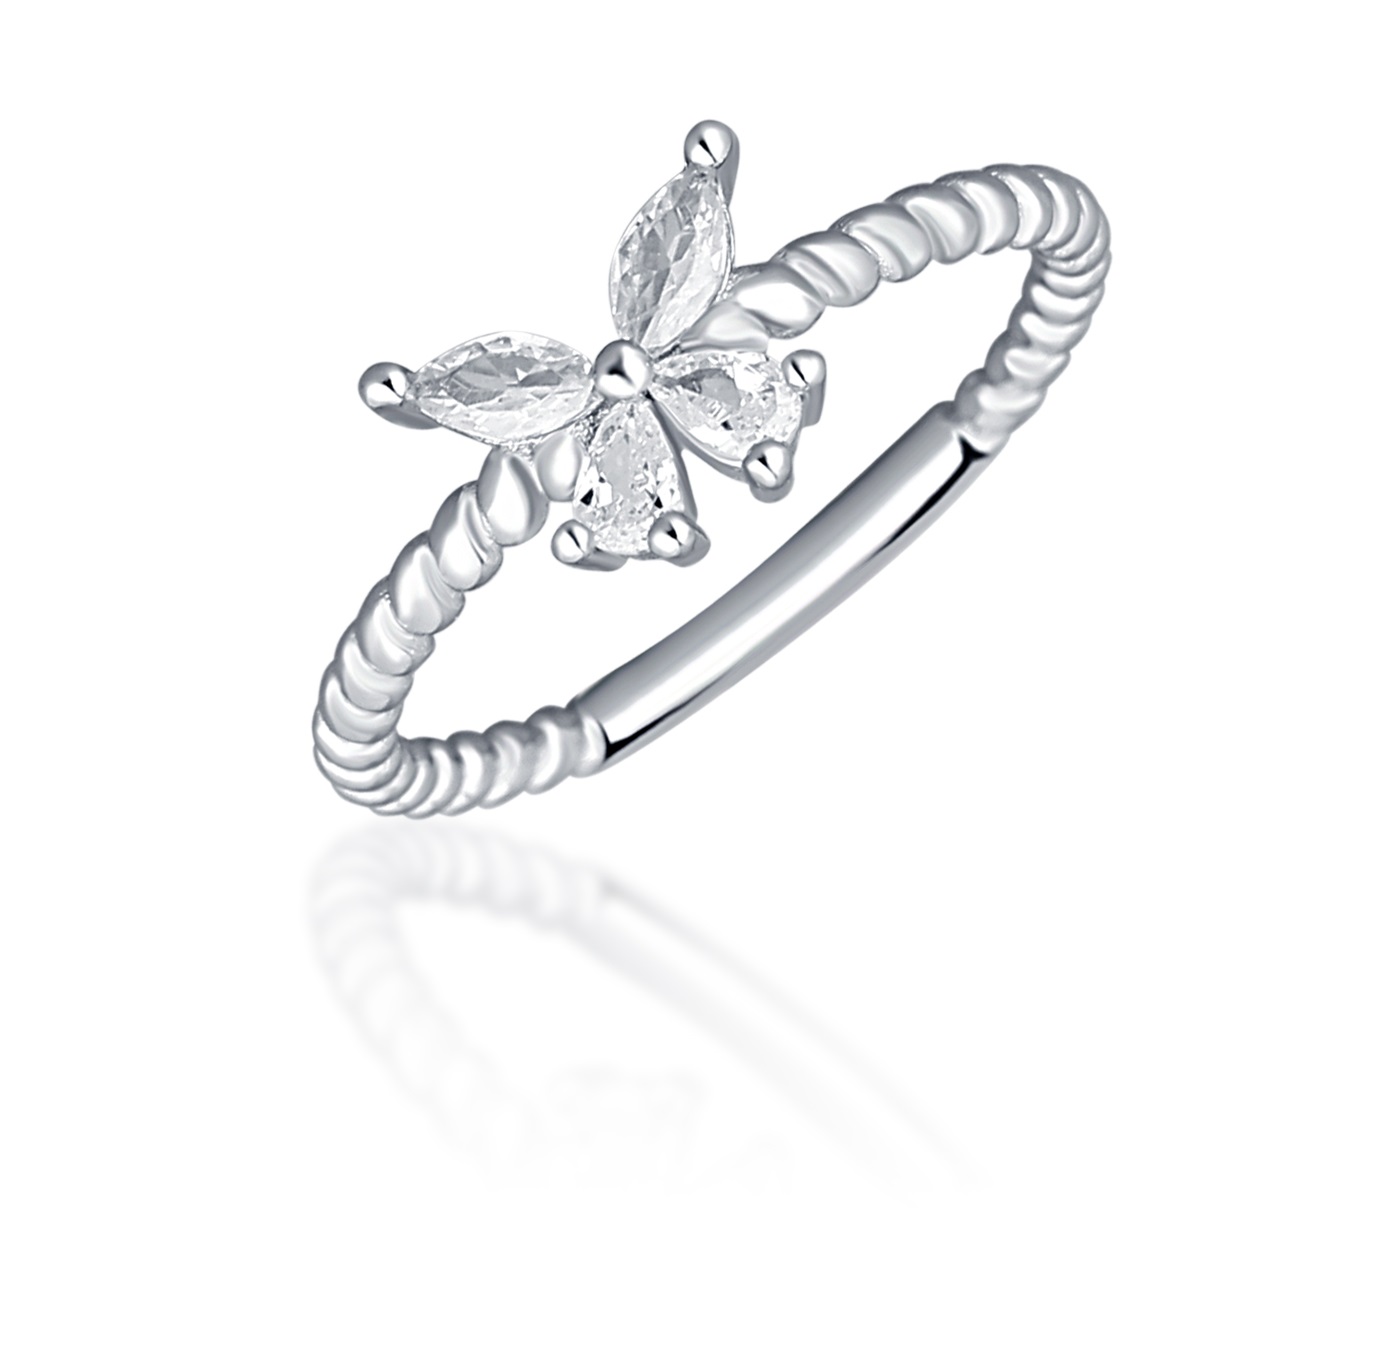 JVD Blyštivý stříbrný prsten s motýlkem SVLR0744XI2BI 54 mm